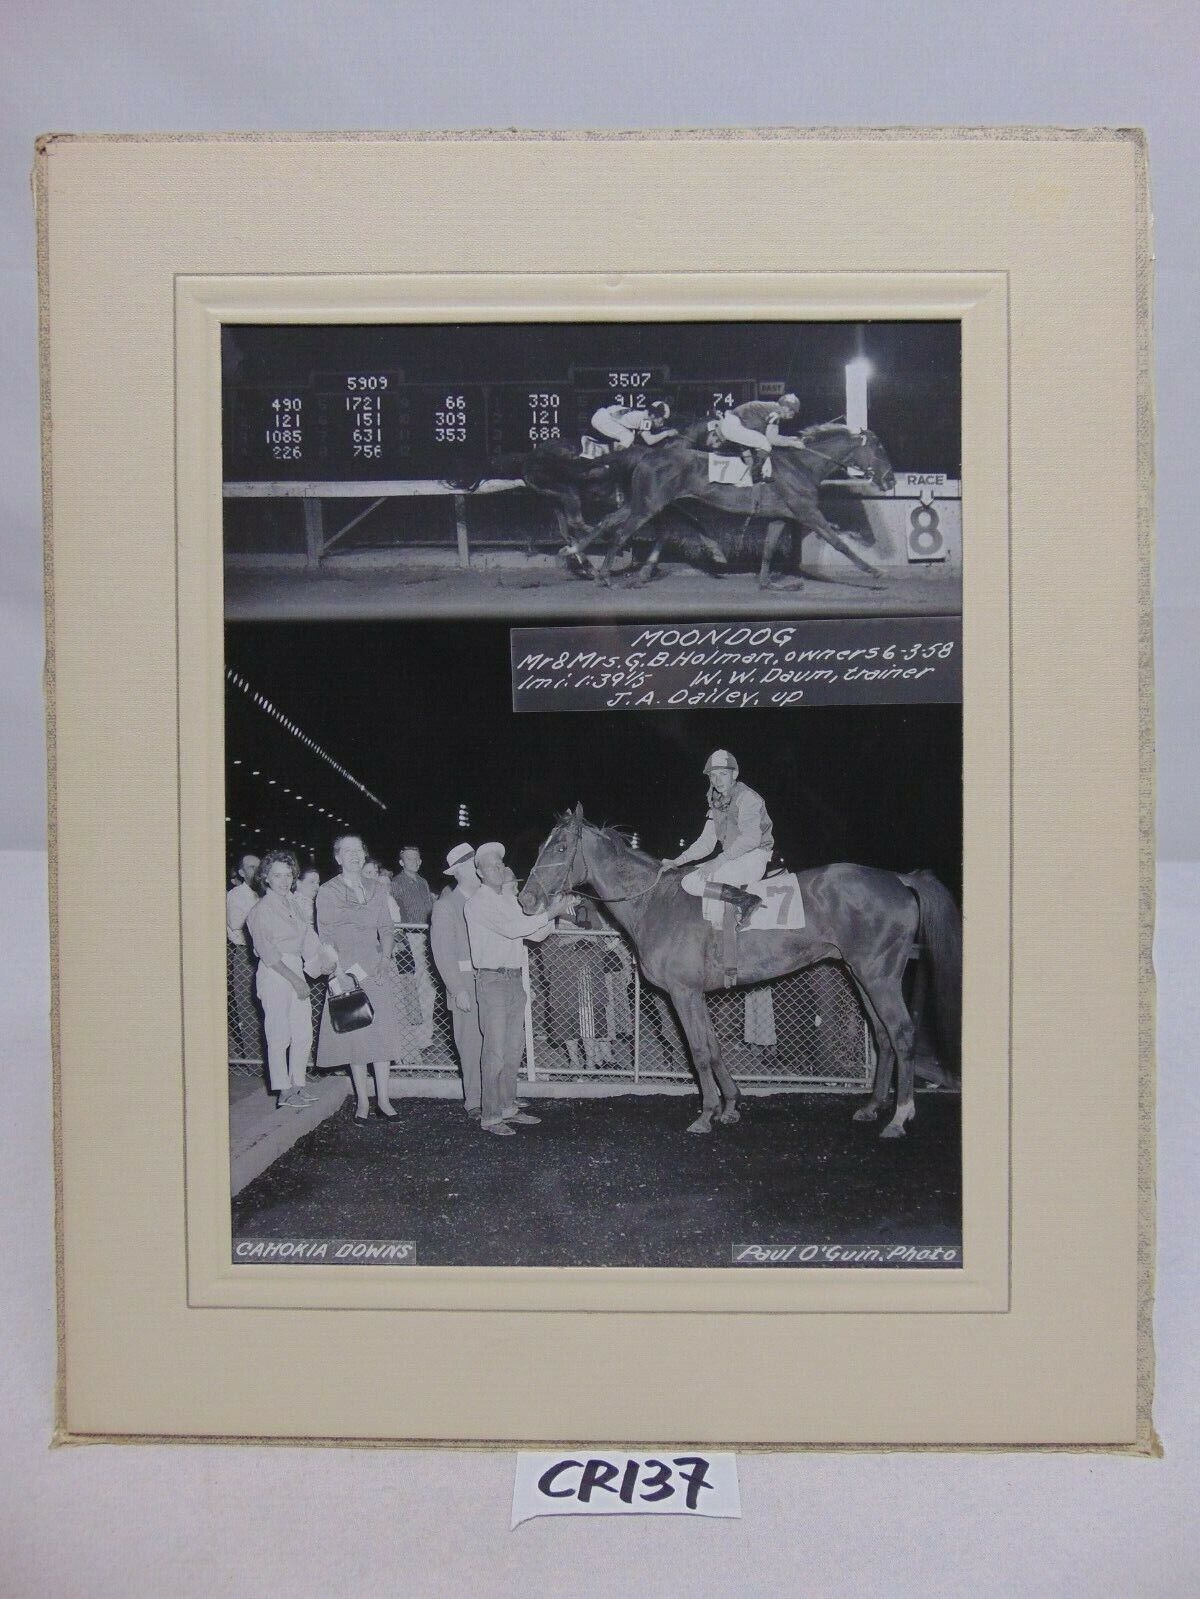 6-3-1958 PRESS PHOTO JOCKEYS ON HORSES RACE AT CAHOKIA DOWNS-MOONDOG-J.A DAILEY